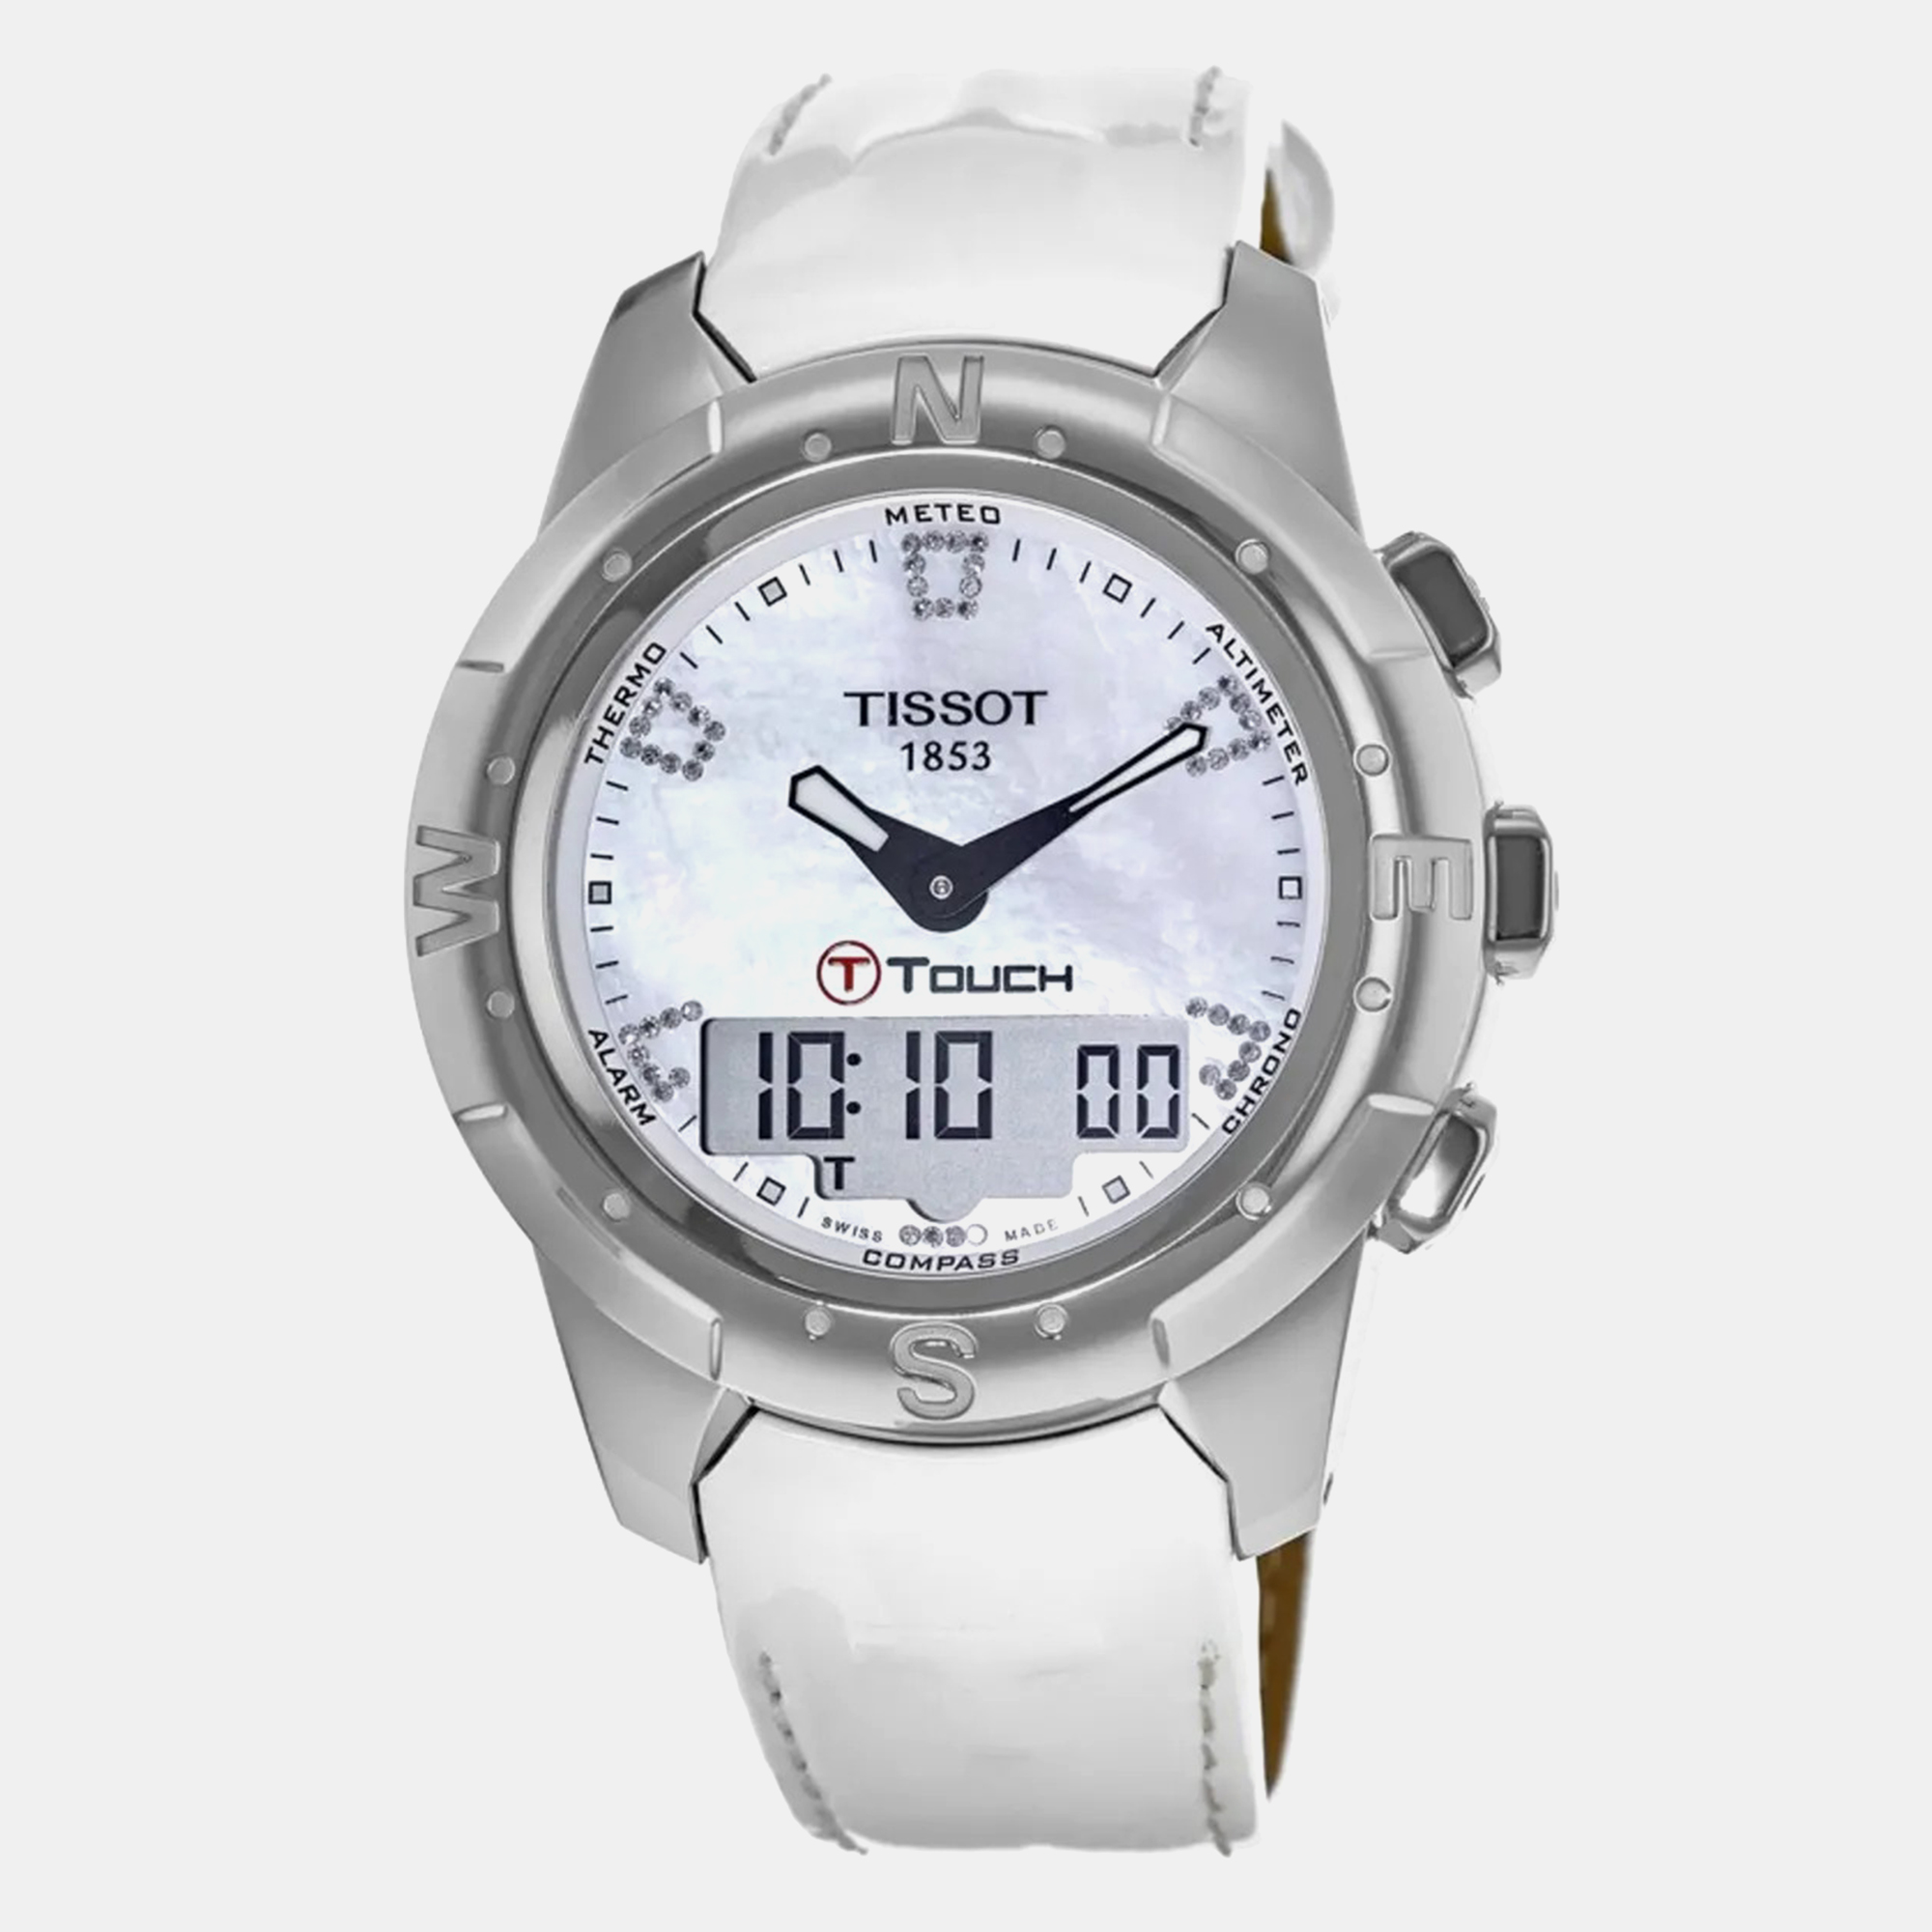 Tissot titanium white t0472204611600 t-touch quartz watch 44mm